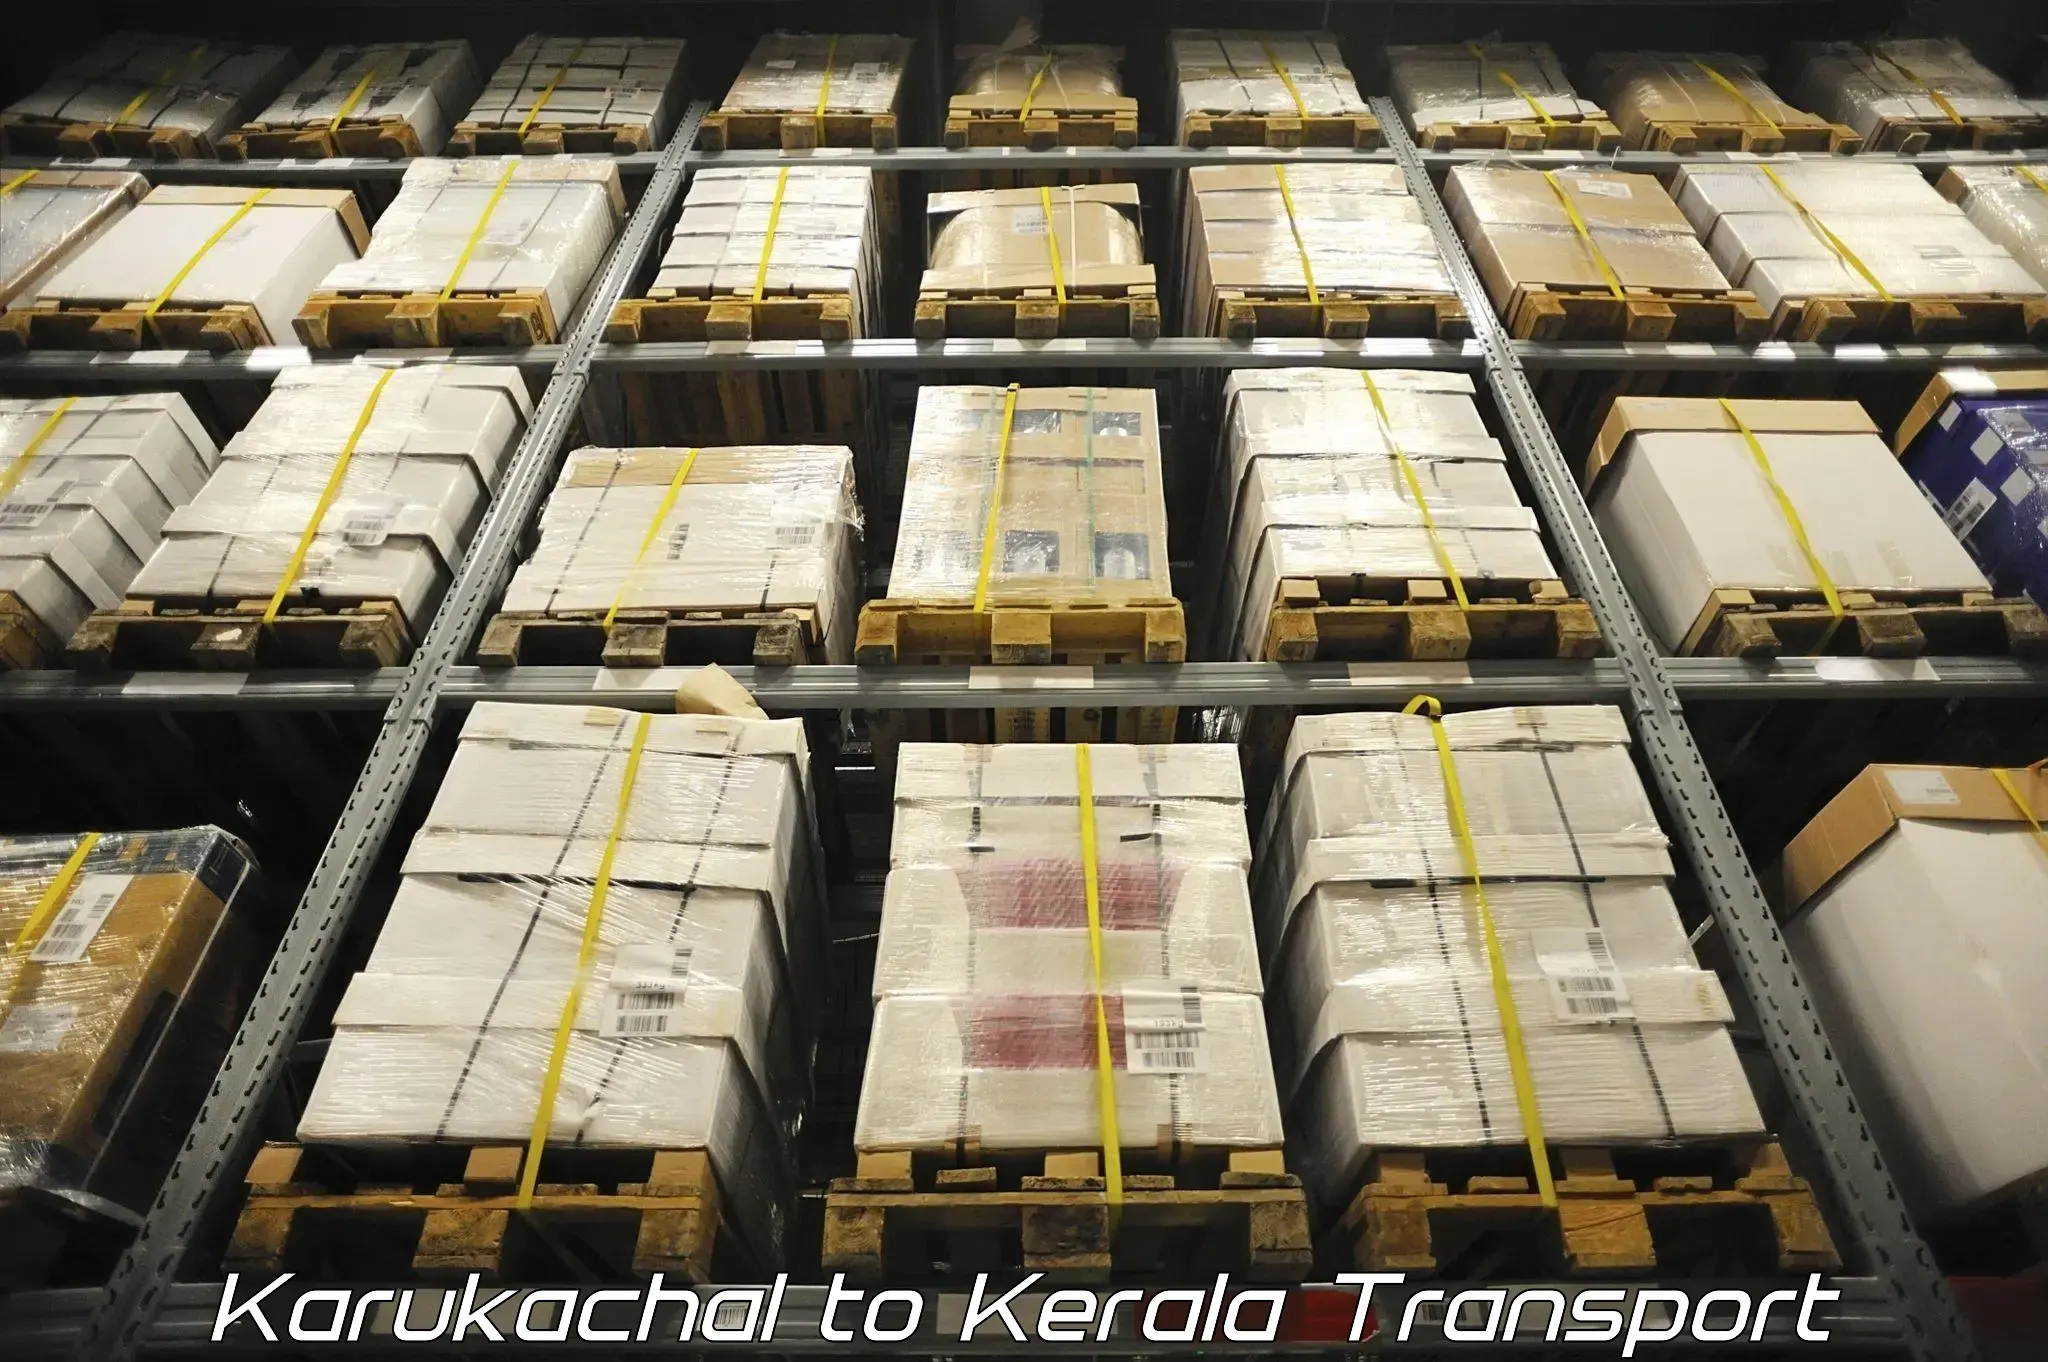 Shipping services Karukachal to Kanhangad